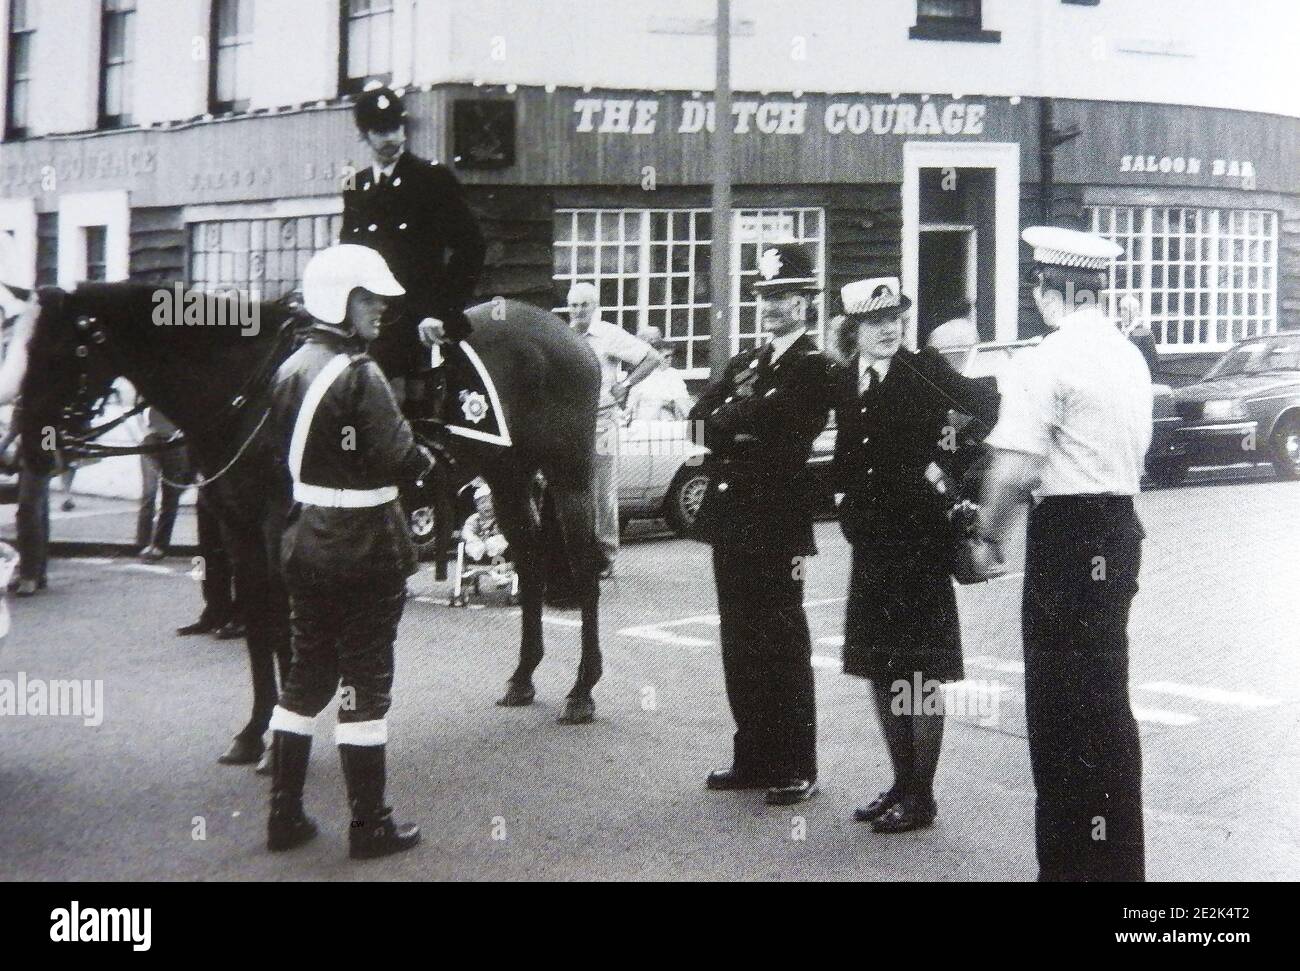 Eine etwa Ende der 1960er Jahre stattfindende Versammlung der britischen Polizei in Whitby, North Yorkshire's jährlicher Regatta, England, zeigt die verschiedenen Uniformen und Kopfbedeckungen, die von verschiedenen Dienststellen zu dieser Zeit getragen wurden. -- auf seinem Pferd montierter Polizist, Motorrad-Cop, Beat bobby (mit Helm), Polizist und Kader-Autofahrer (weißes Hemd) dahinter ist die ehemalige niederländische Courage Bar (jetzt nicht mehr vorhanden), die Teil des Royal Hotel auf Whitby's West Cliff war. Stockfoto